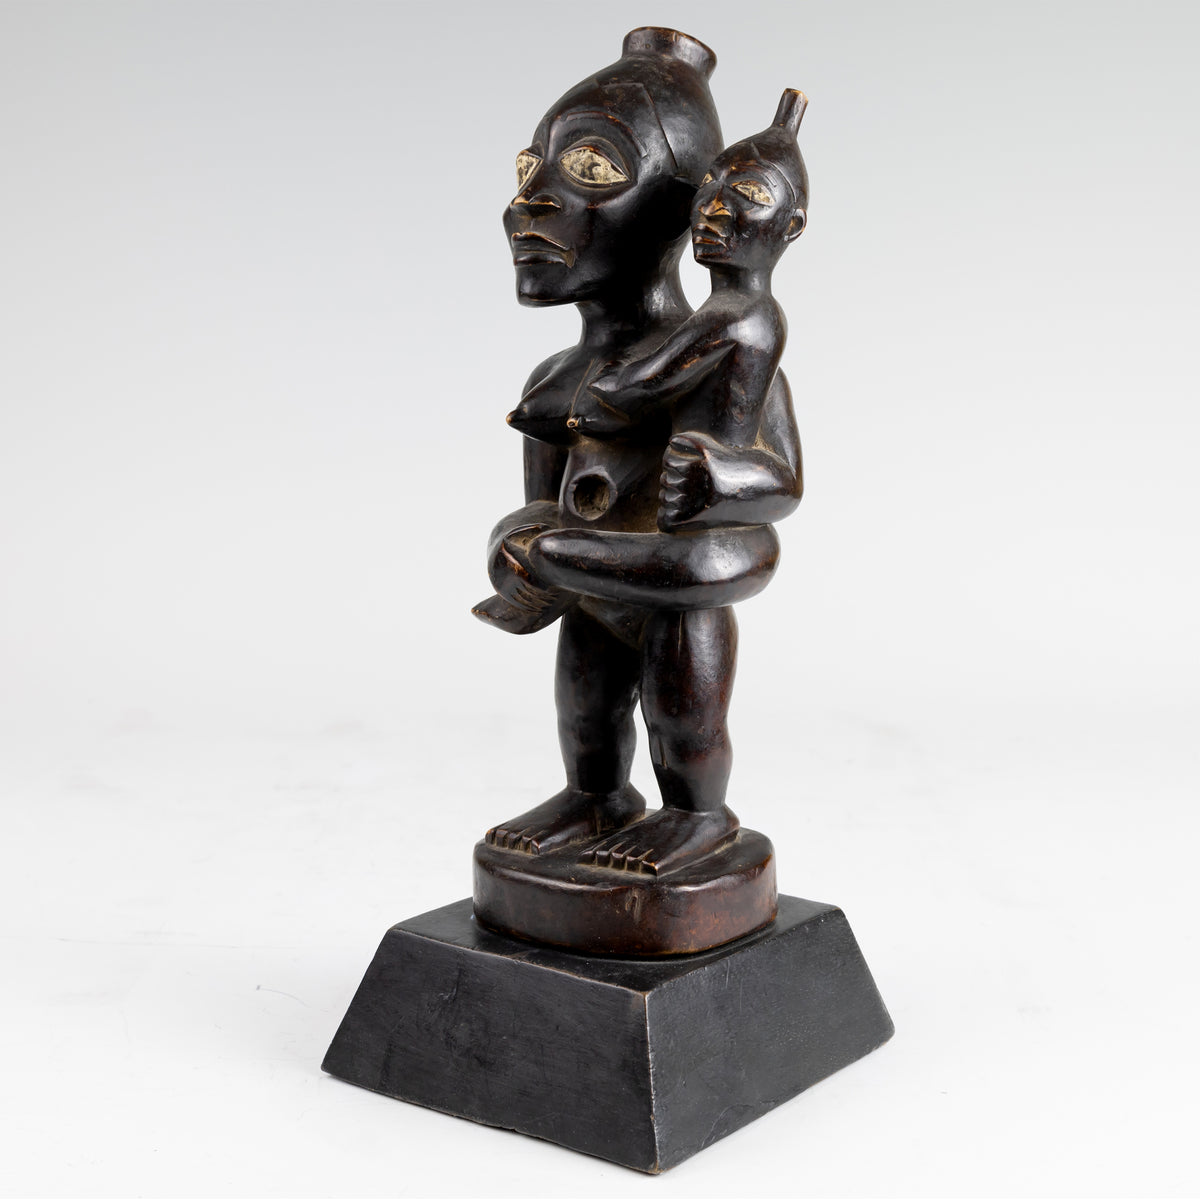 File:Maternity figure, Borneo, c. 200 BCE, bronze, Honolulu Museum